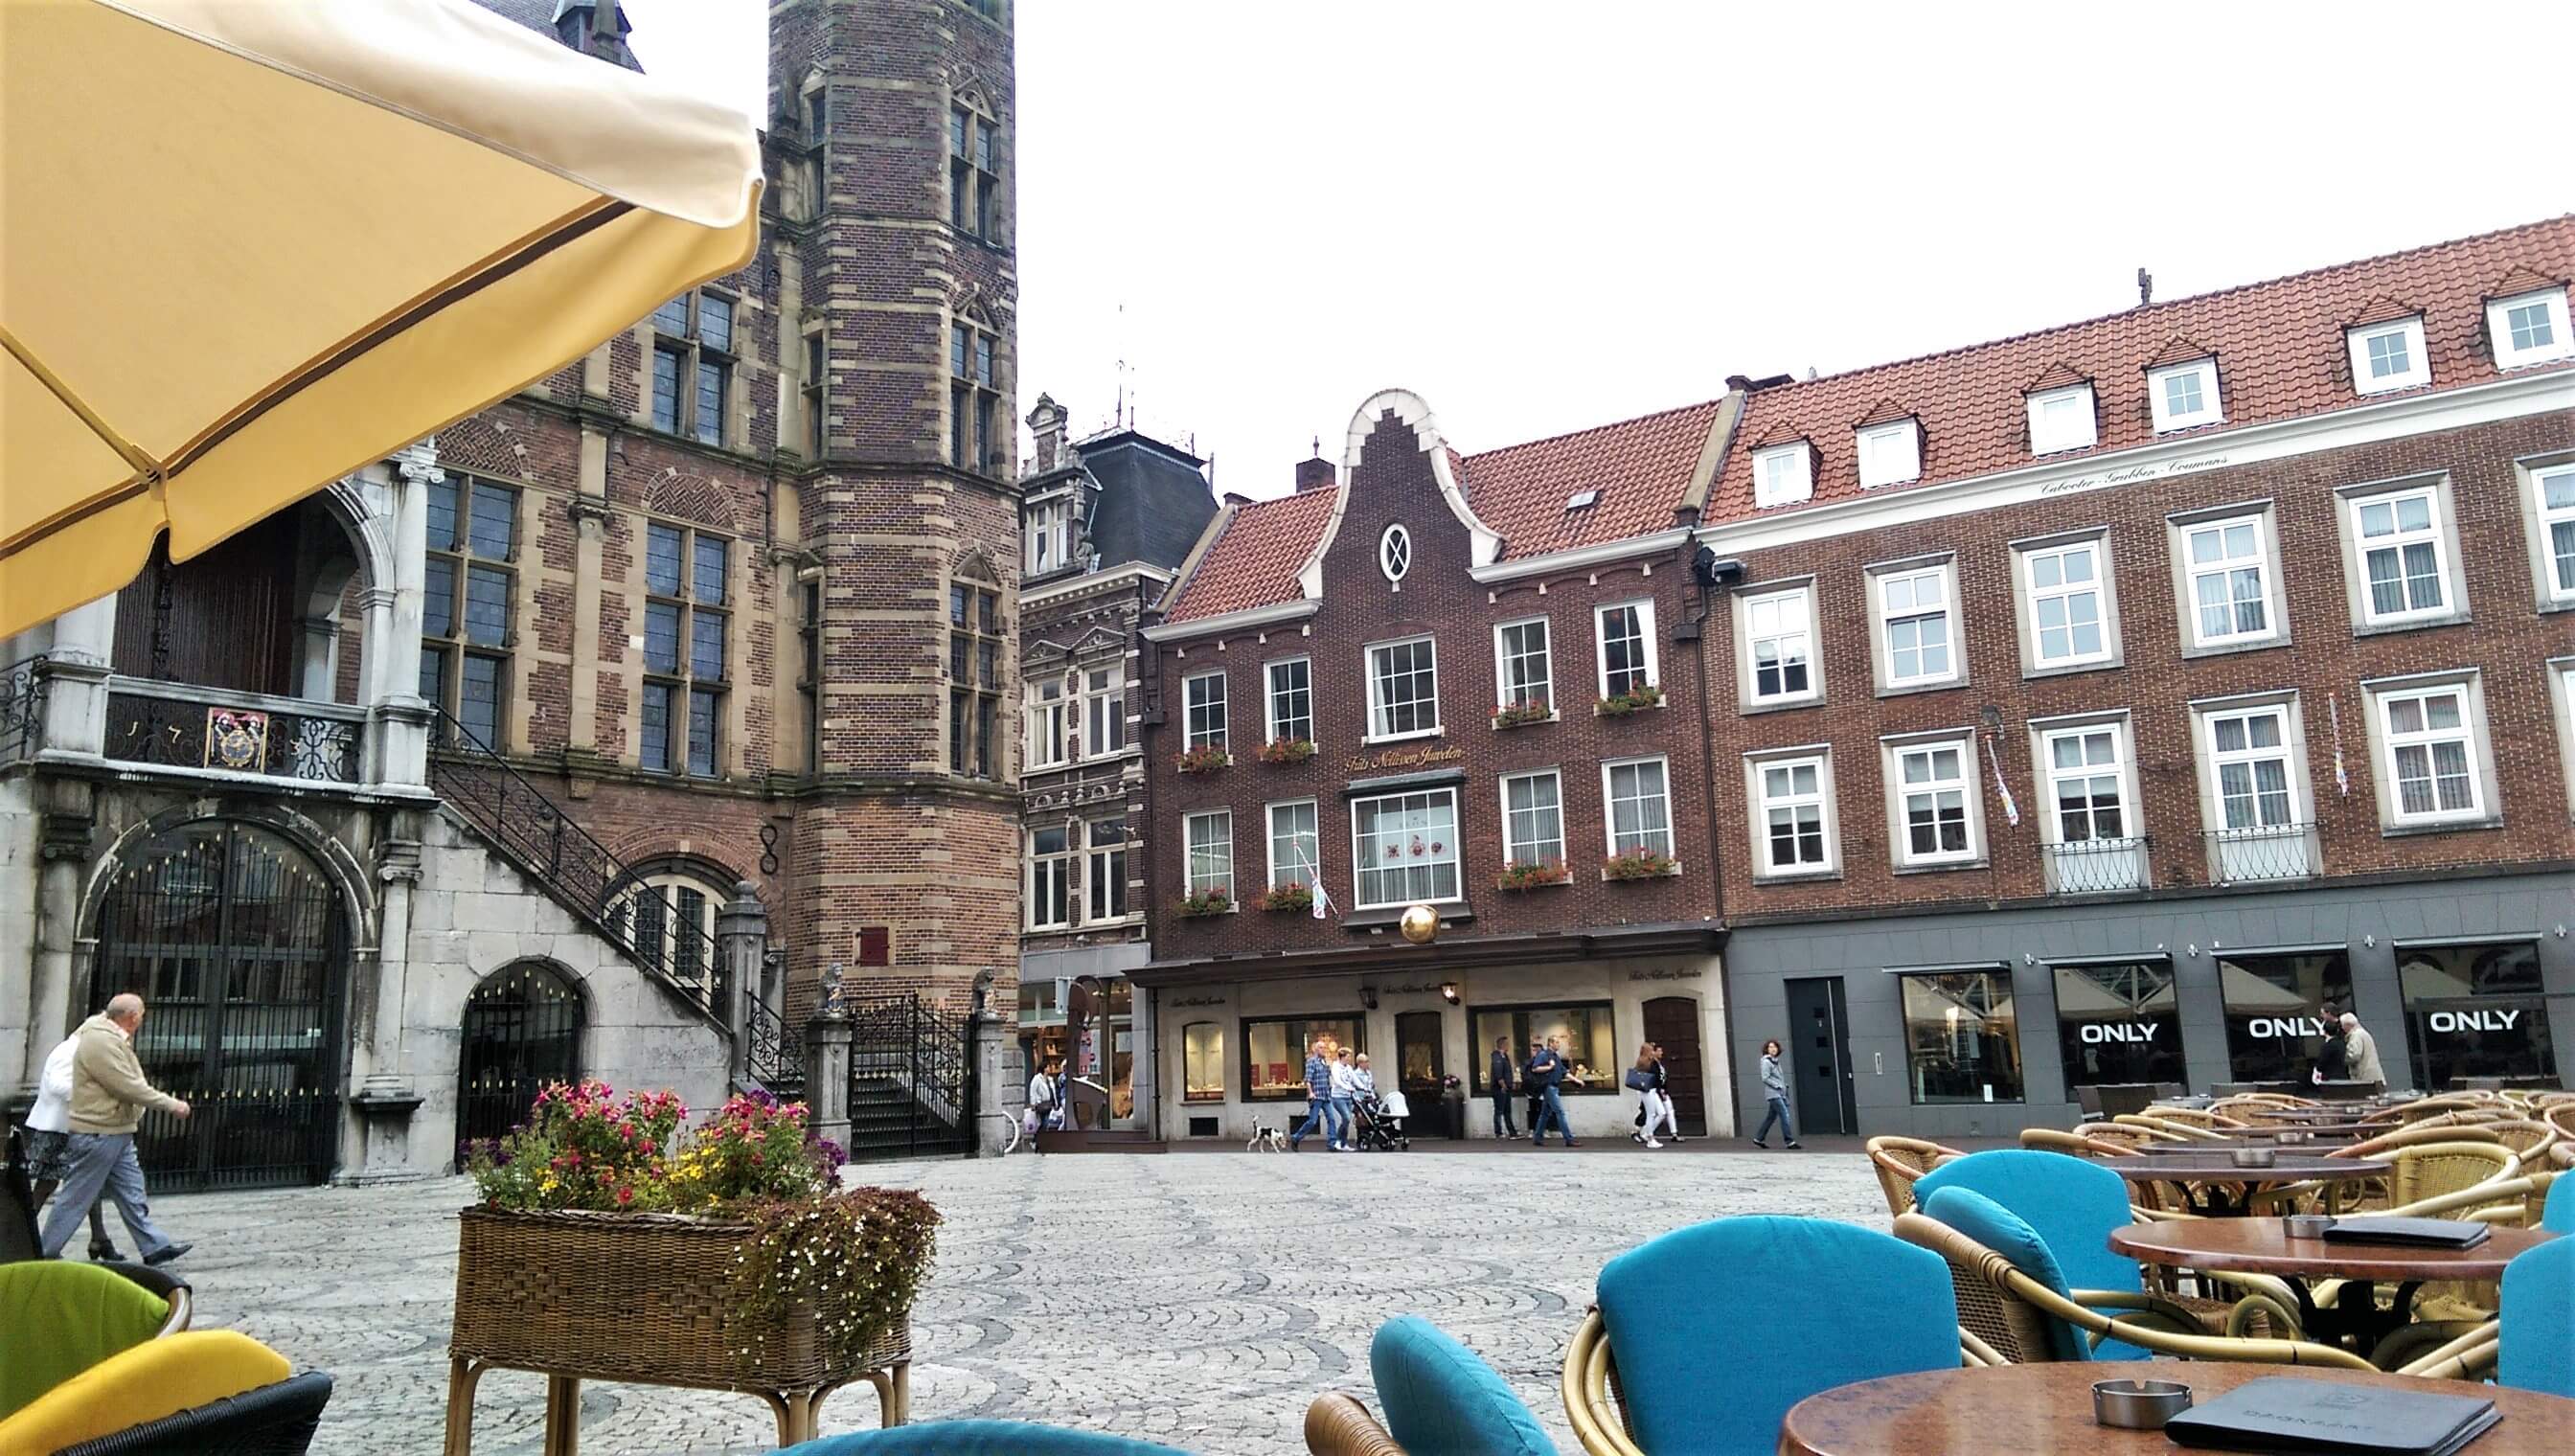 Heute zeigt euch Mandy in einem Gastbeitrag durch Venlo und in ihr Lieblinksrestaurant. Lies jetzt mehr auf msiemund.de!